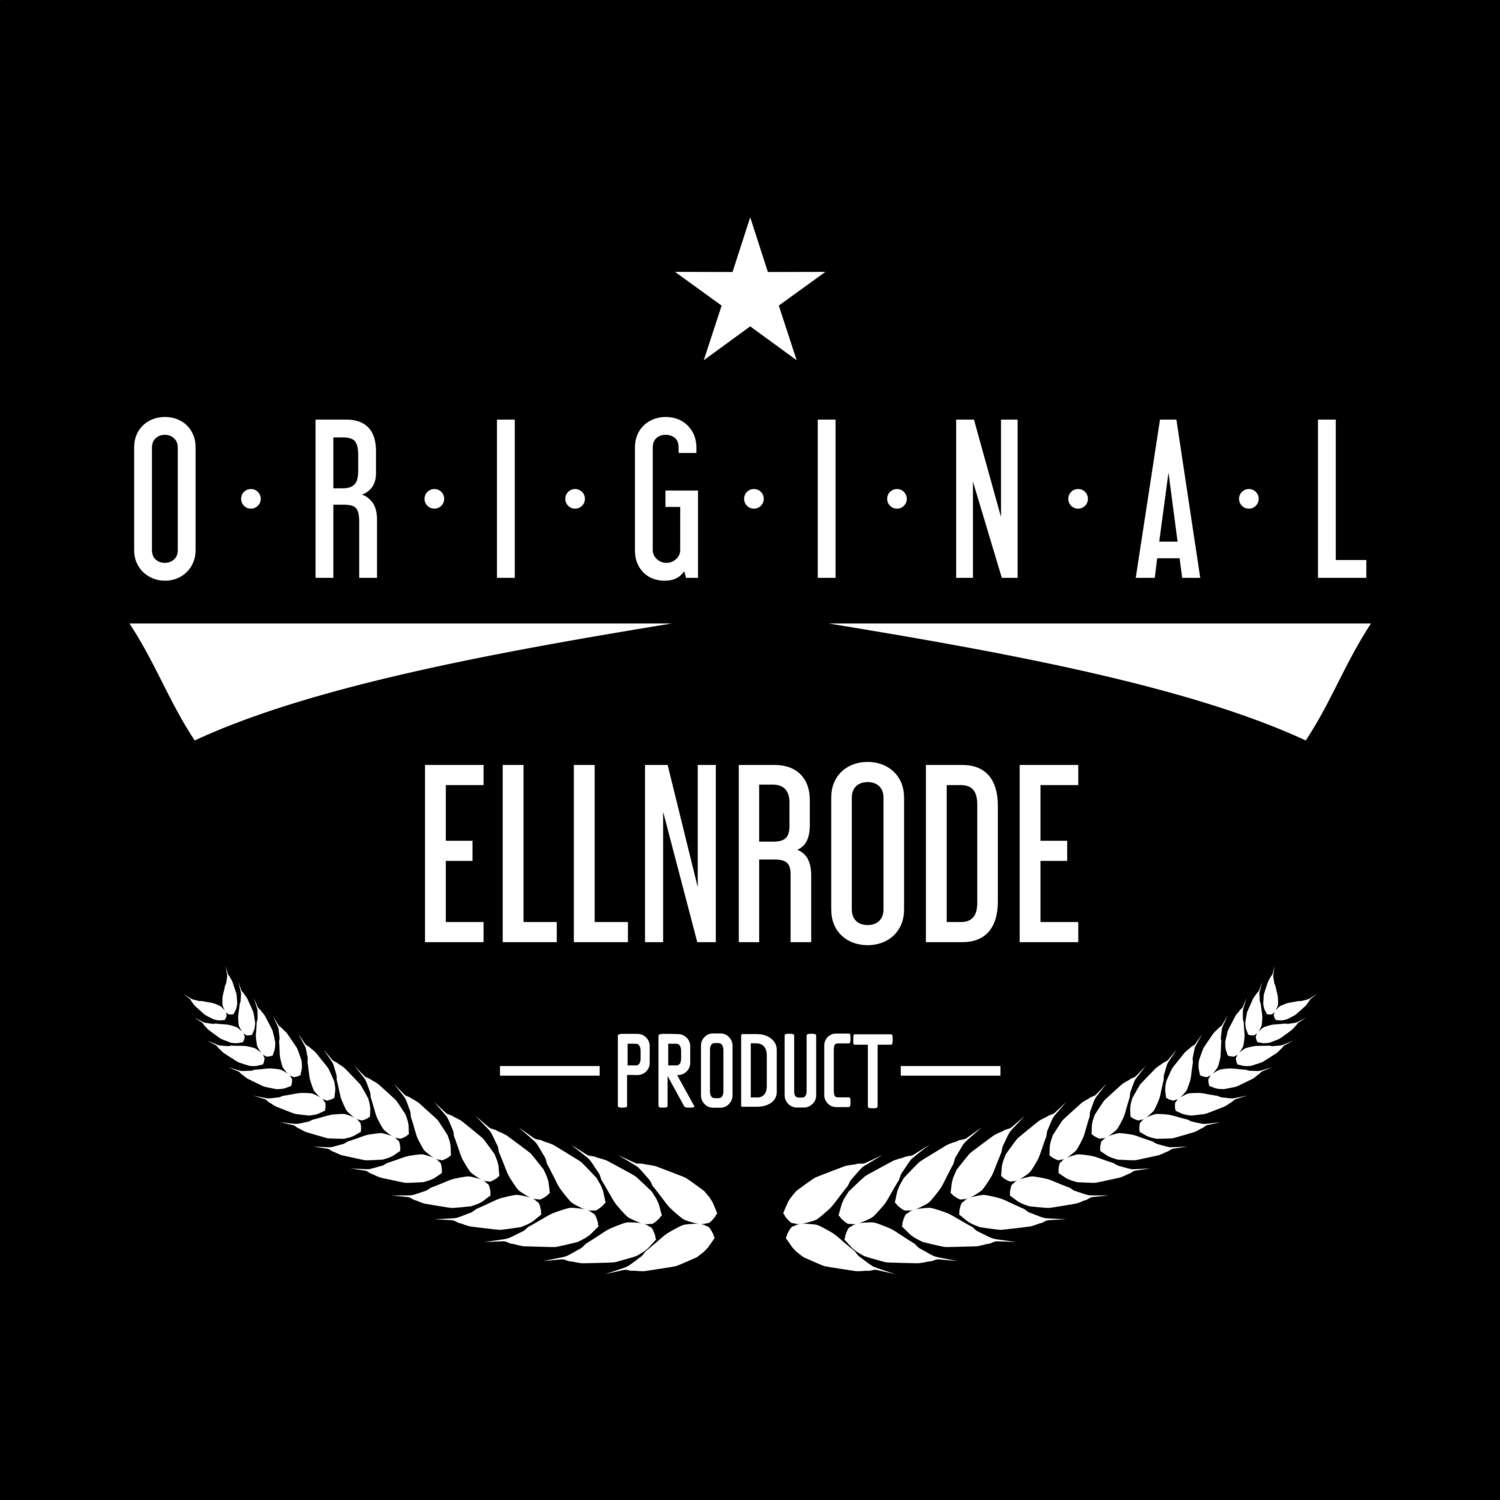 Ellnrode T-Shirt »Original Product«